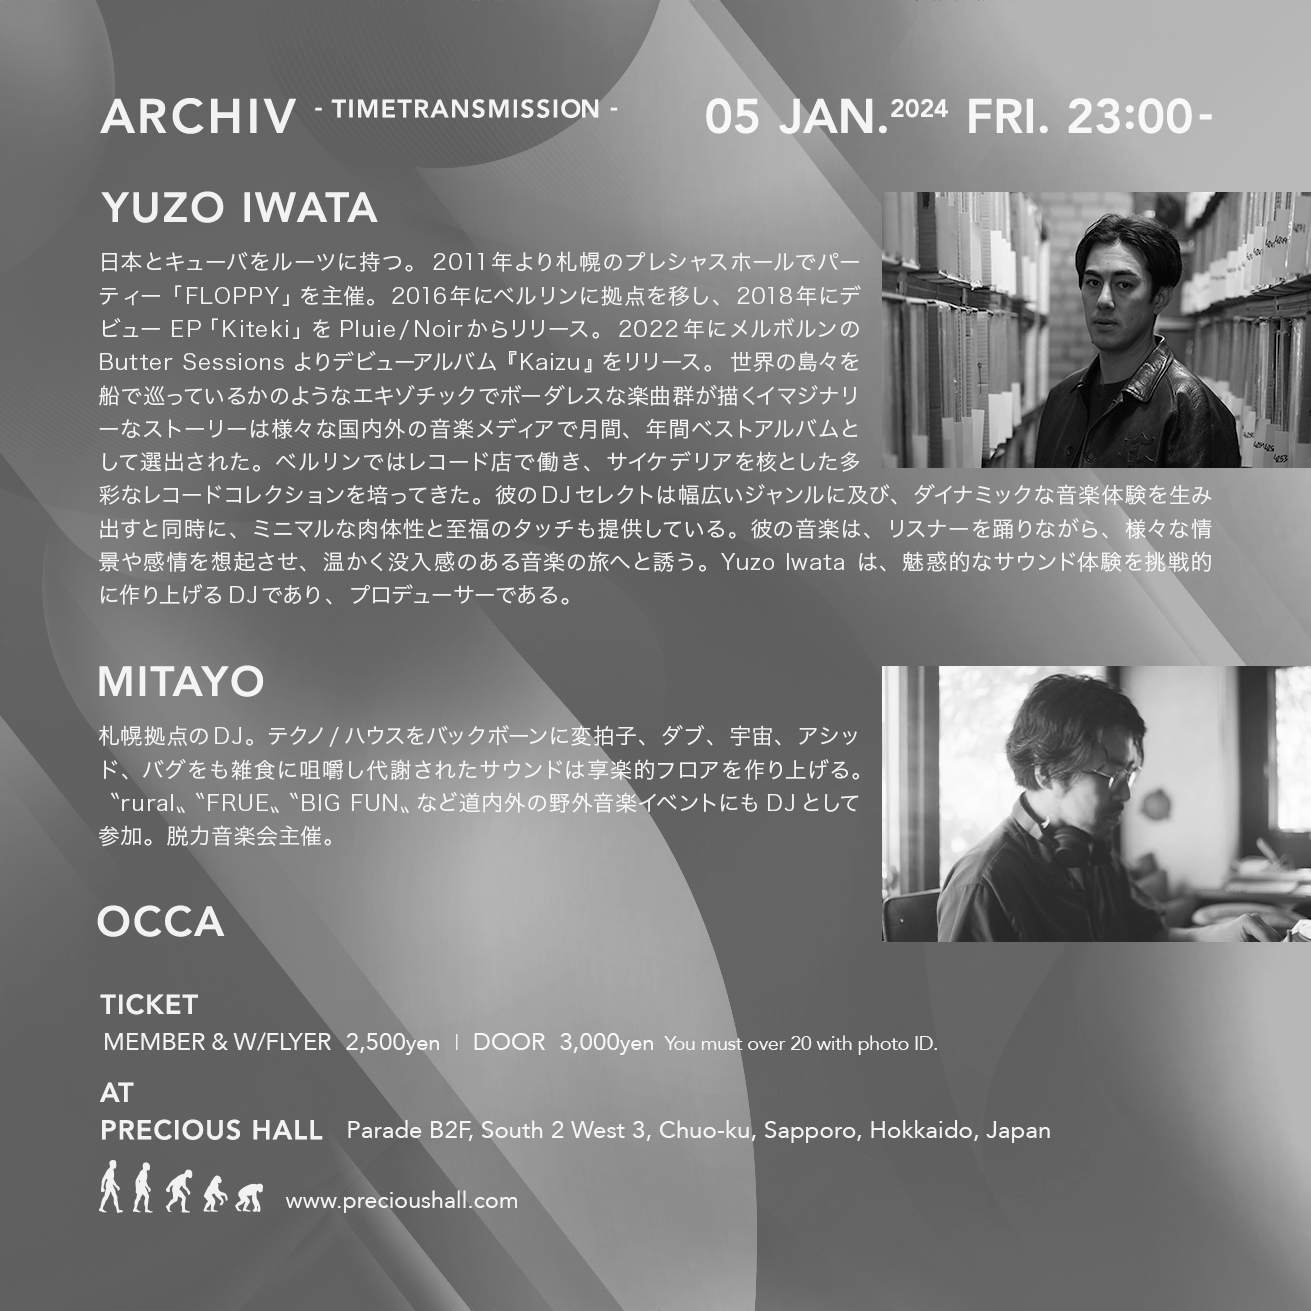 ARCHIV - Yuzo Iwata / MITAYO / OCCA - - フライヤー裏